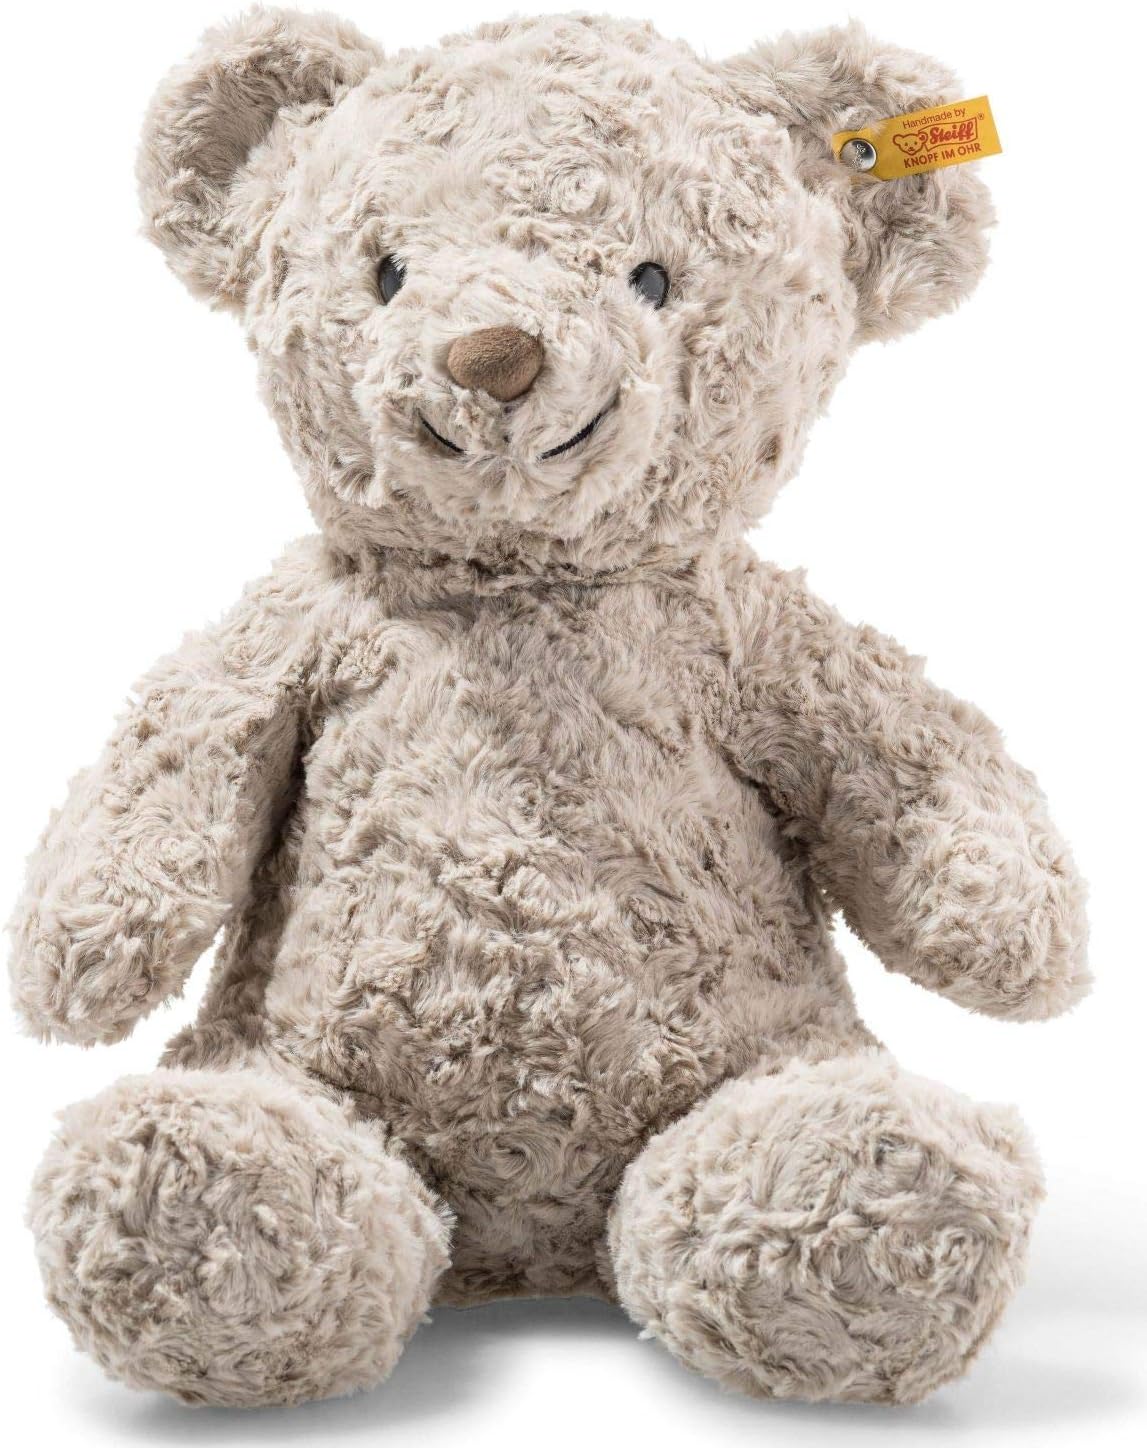 Steiff 113437 Soft Cuddly Friends Honey Teddybär, grau, 38 cm